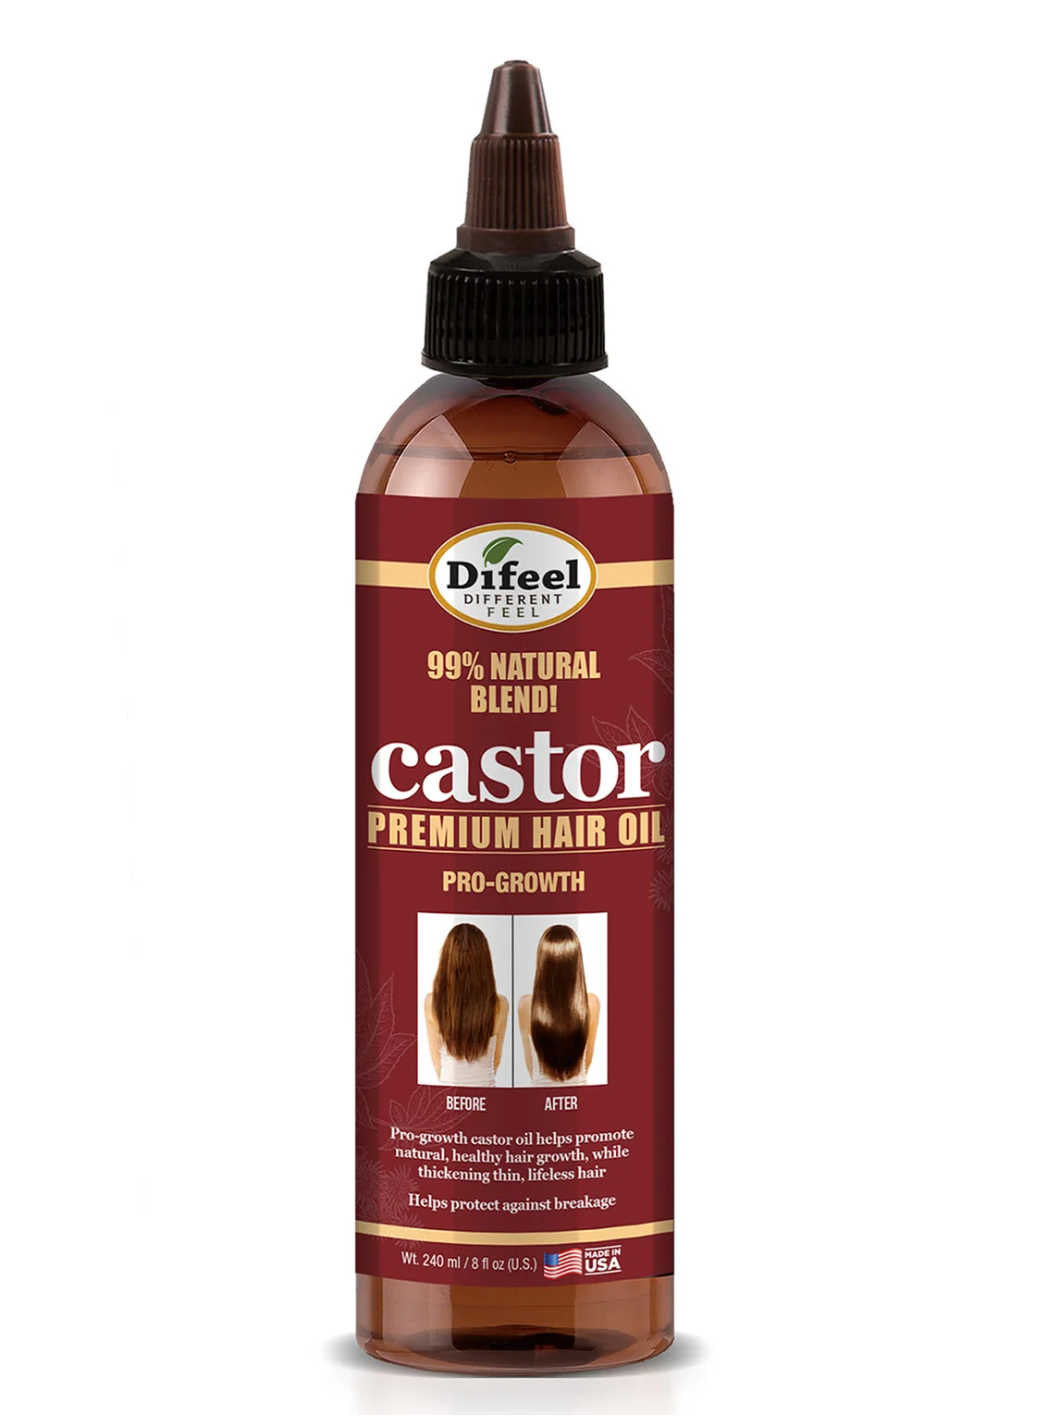 Difeel Castor Pro-growth Hair Oil 8oz